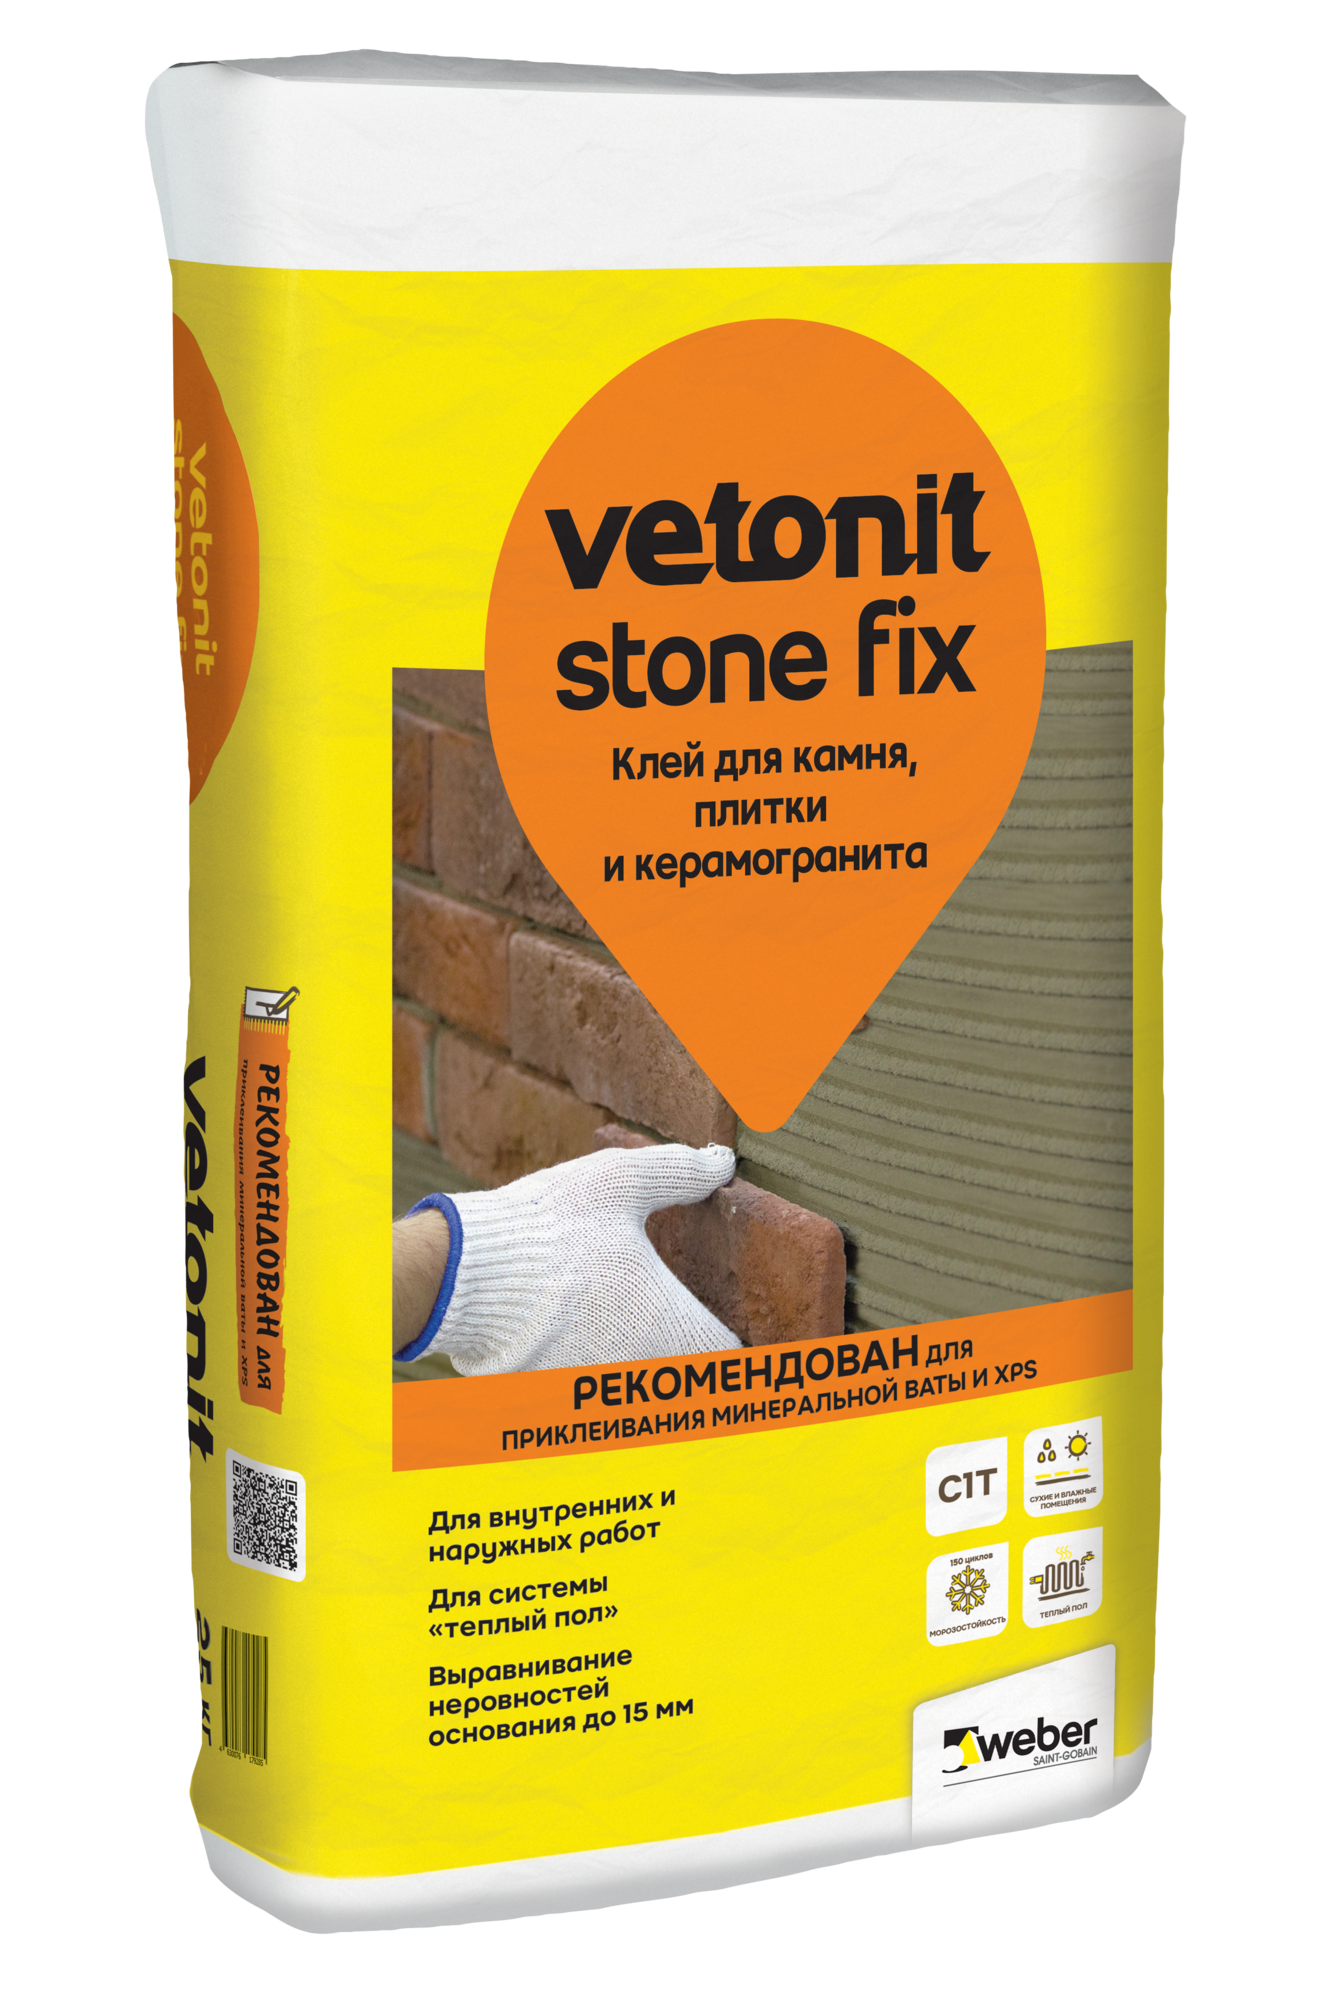 Клей для камня, плитки и керамогранита vetonit stone fix 25 кг